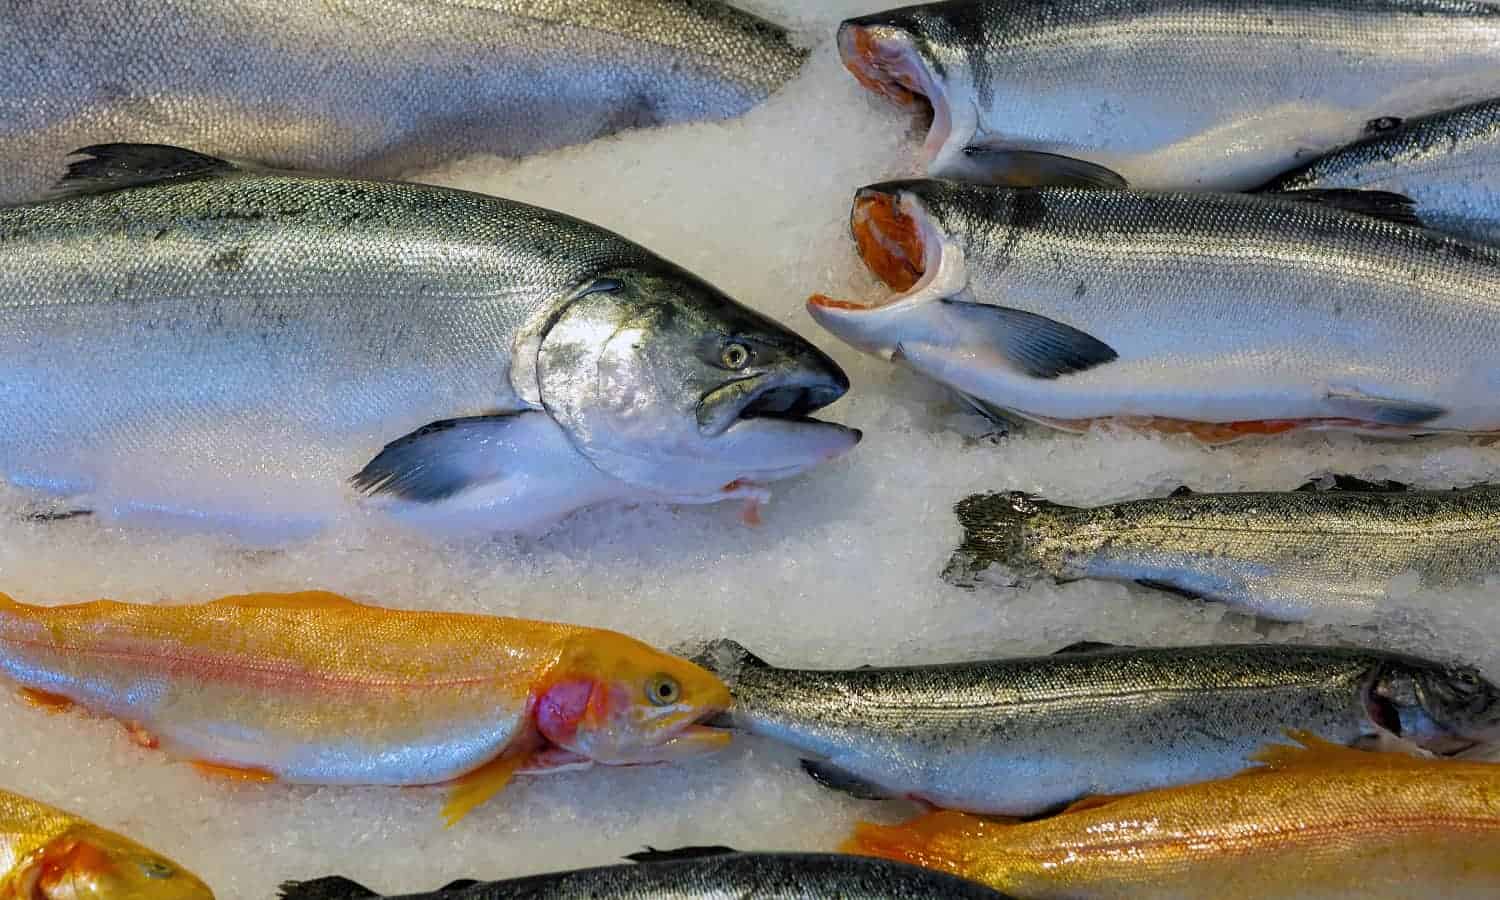 阿拉斯加海鲜产业能满足全球对鱼的需求但气候变化和过度捕捞的威胁到本地人们的食品供应。